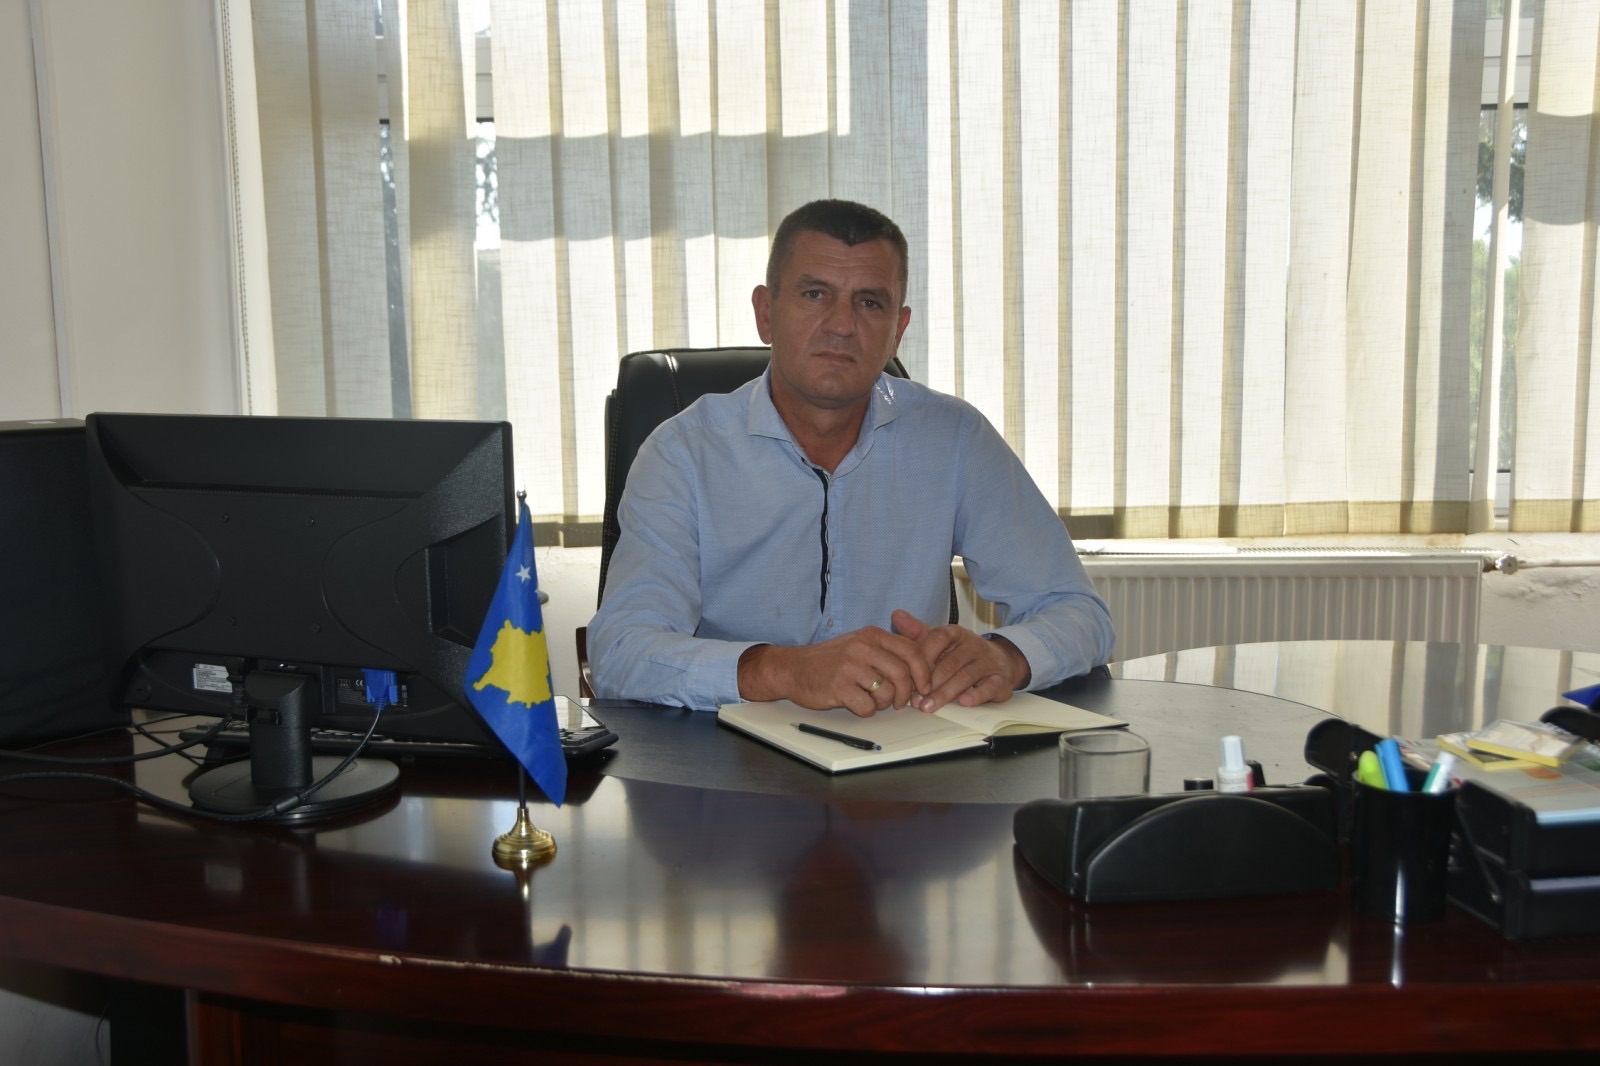 Zëvendësministri për Kthim: Sot është tentuar të vritet Marko Jablanoviq në Leposaviq, sulmuesit i dështoi “Shkorpioni”